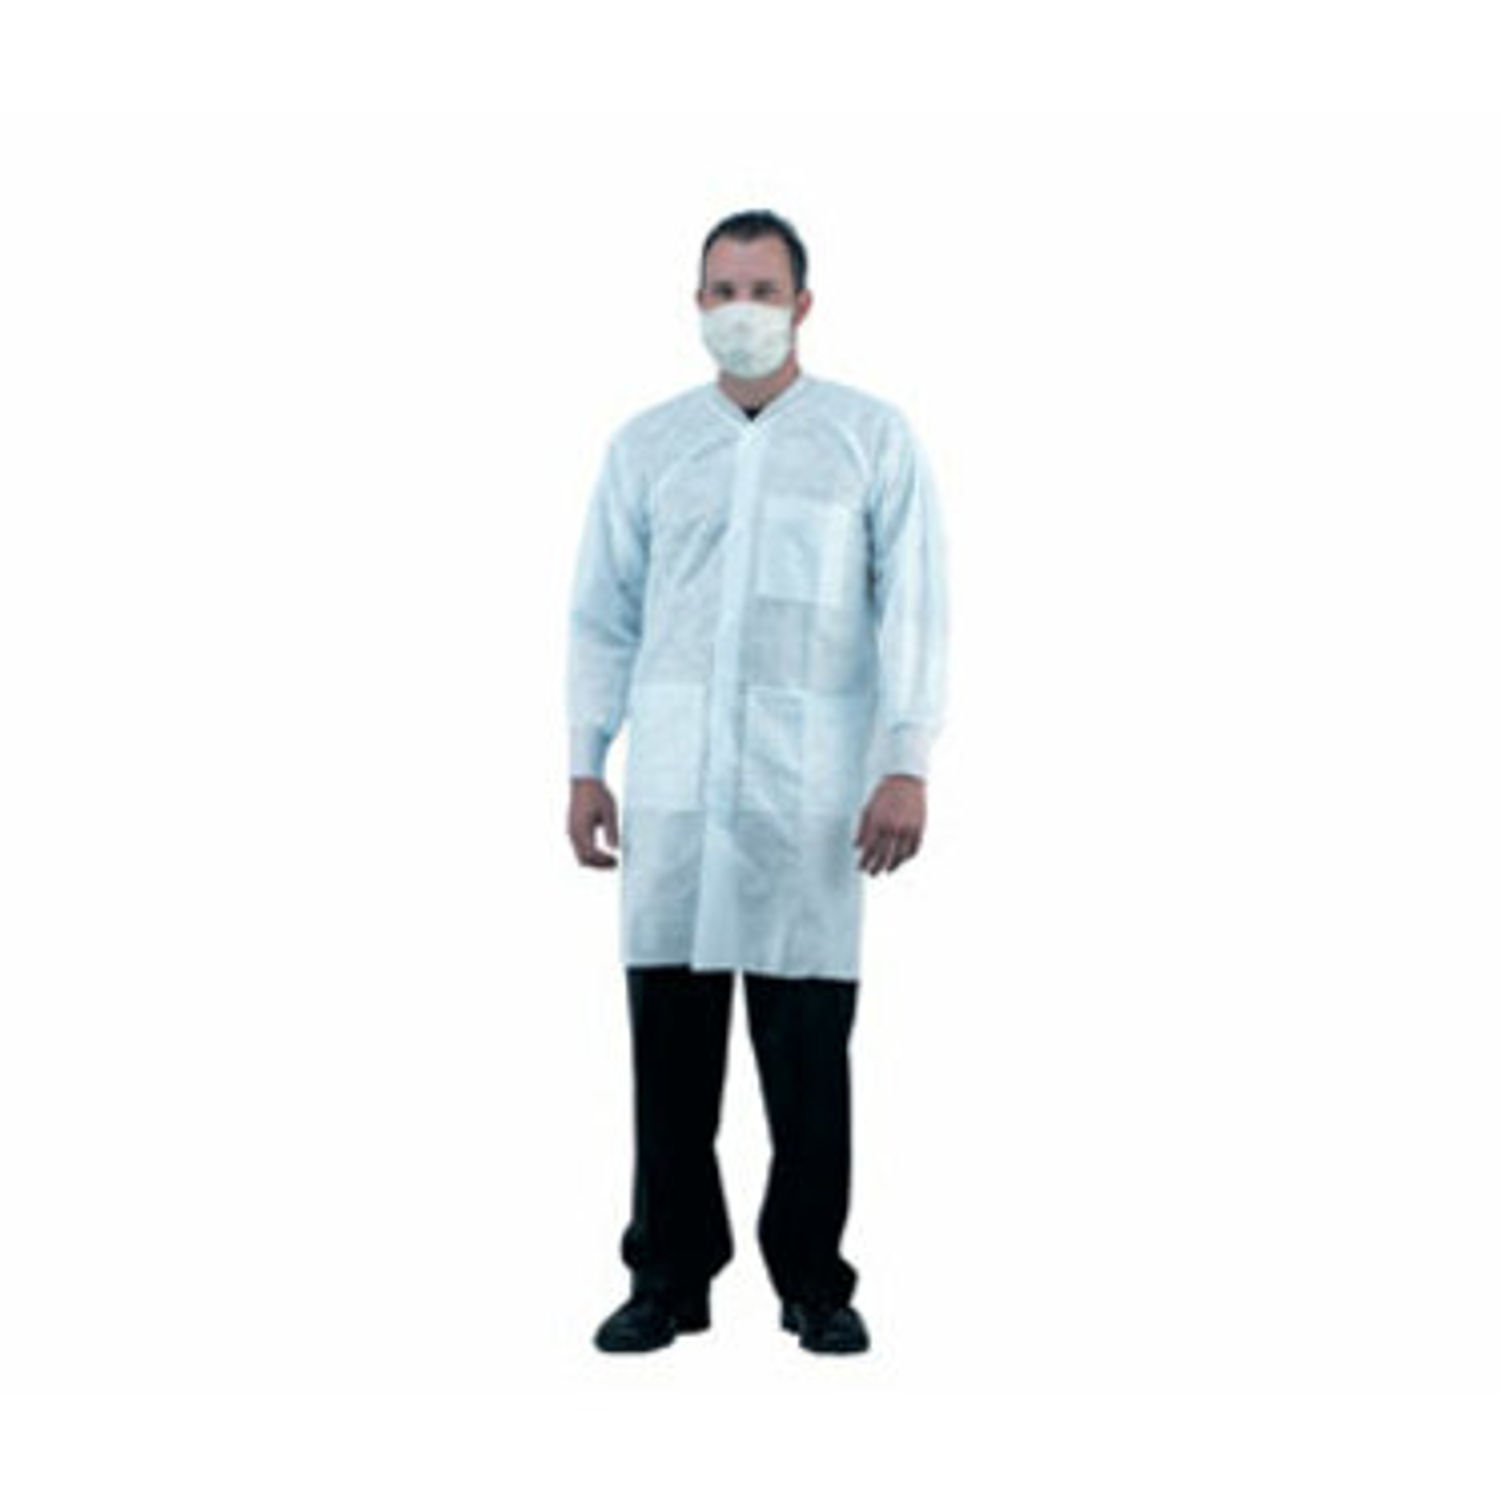 PE Coated Disposable Lab Coat Without Pockets Medium (M) Size For Unisex, 42" Length, White, Polyethylene, Polypropylene